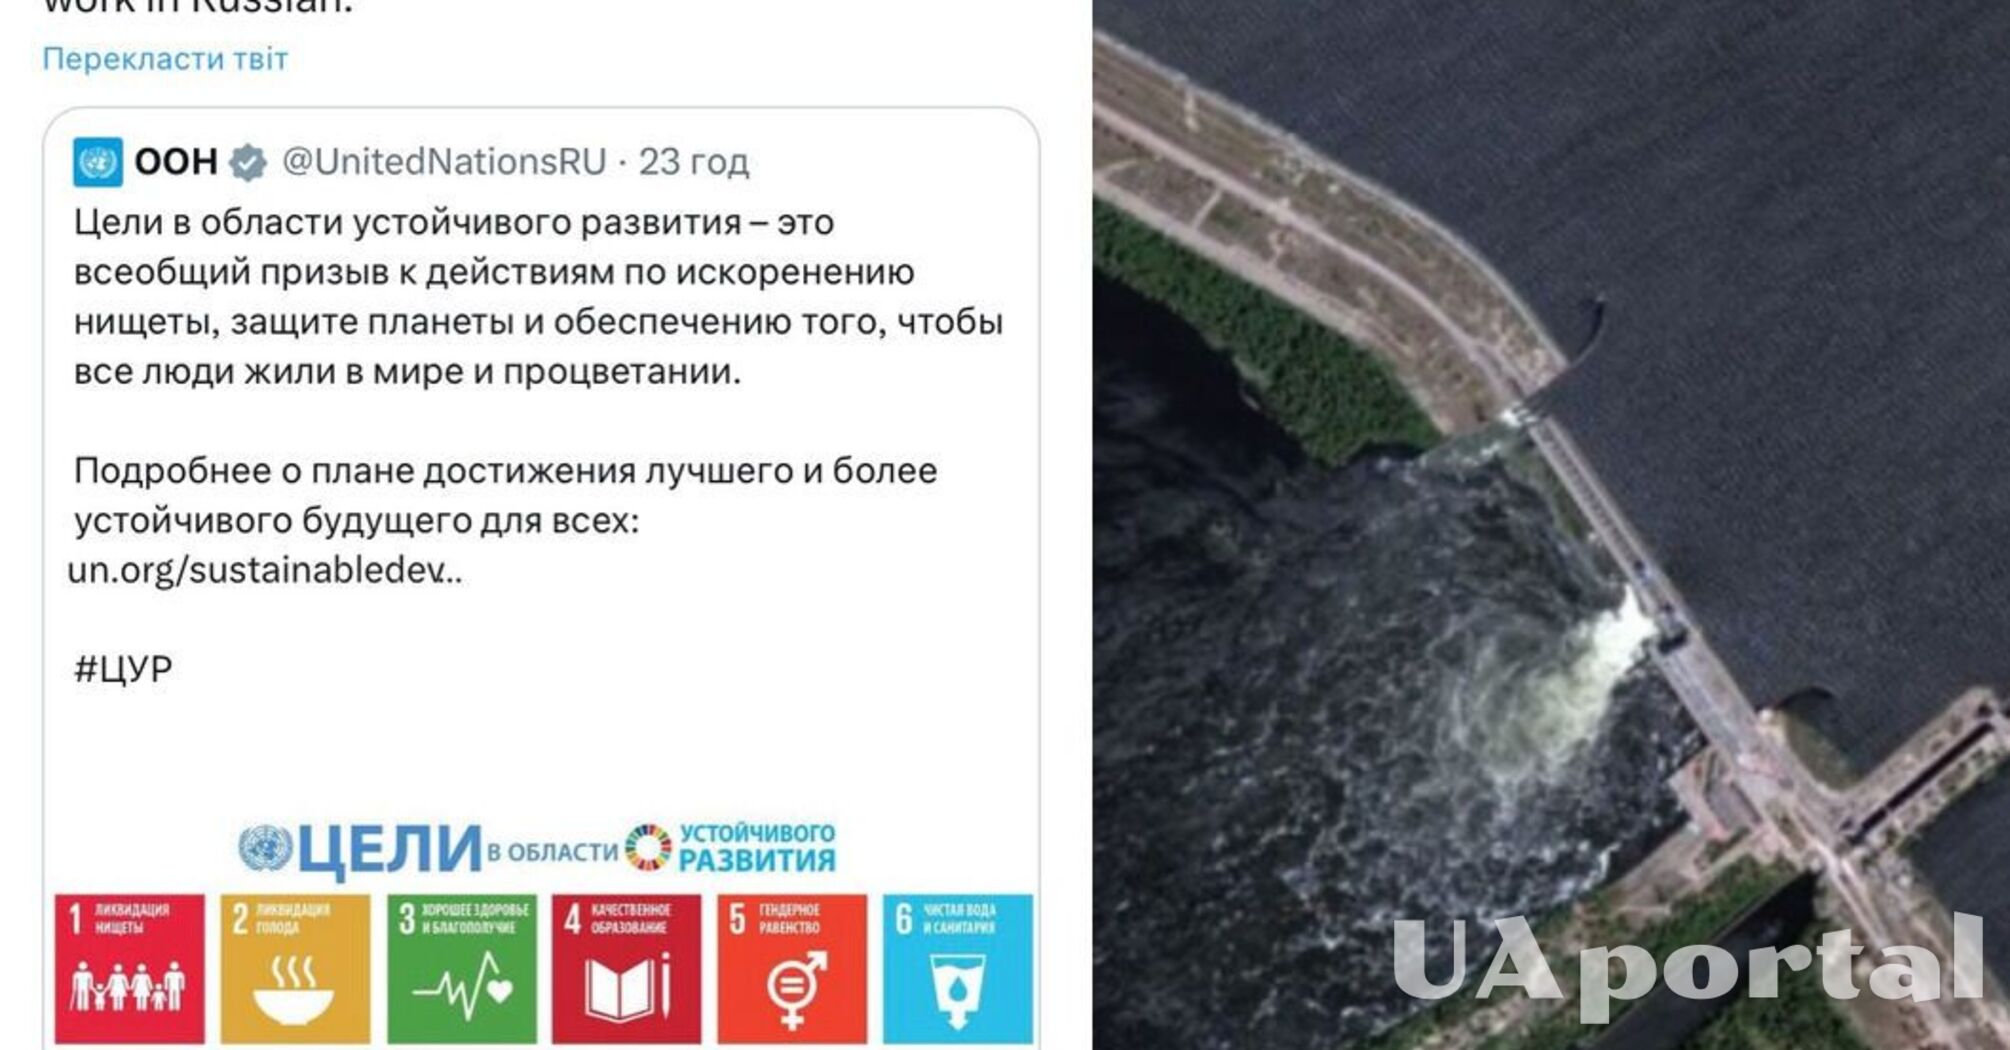 'Необъятный уровень клоунизма': ООН разнесли в комментариях за пост о дне русского языка во время подрыва Каховской ГЭС